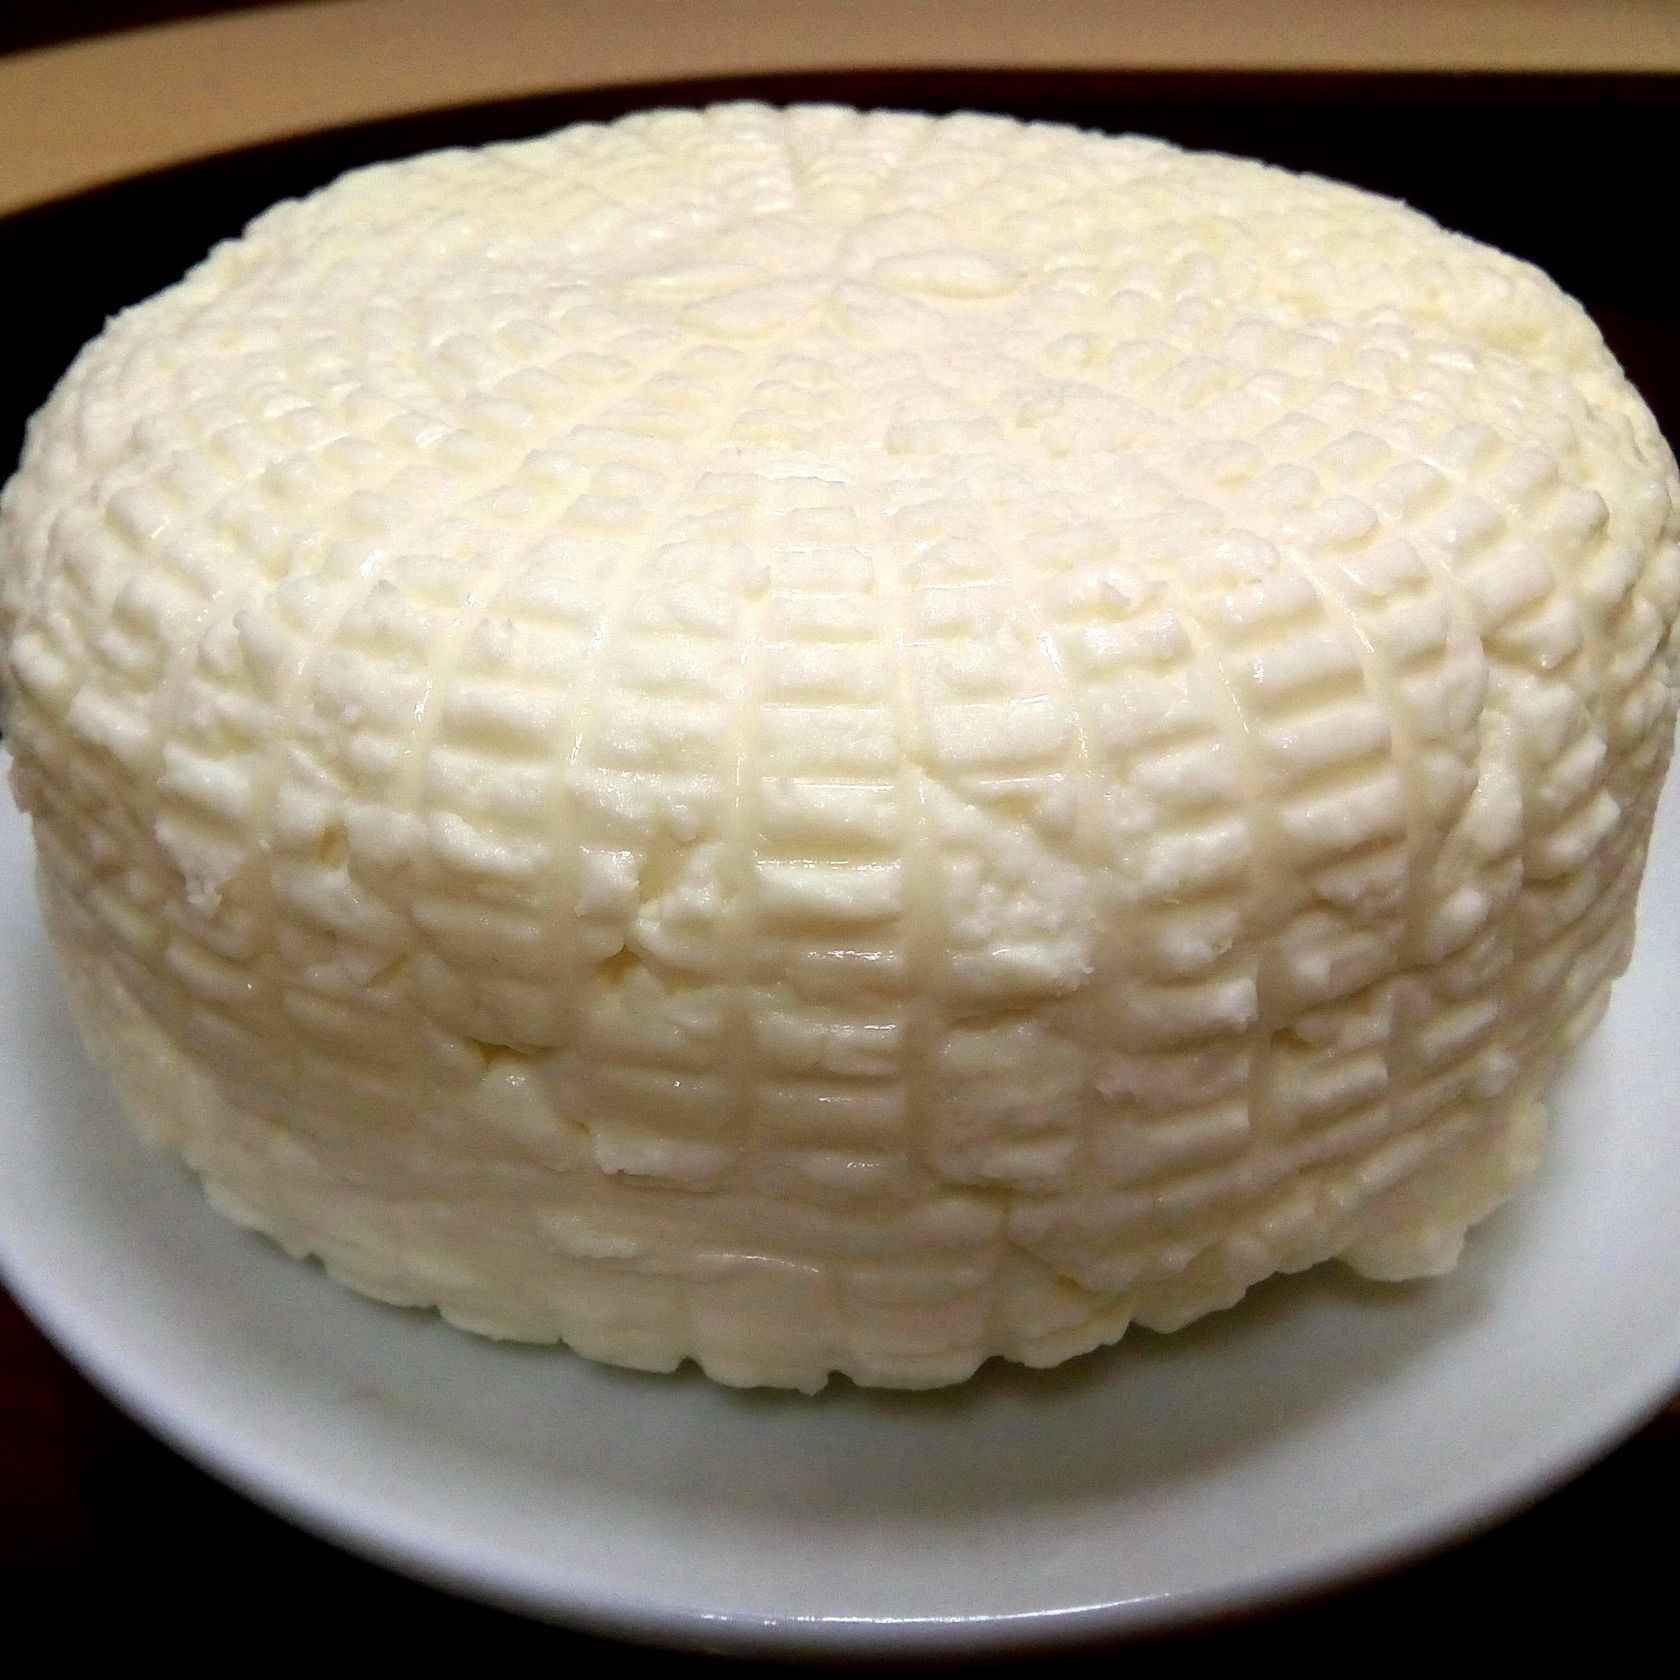 Из молока на траве делают сыр. Технология похожа на ту, что используется в производстве адыгейского сыра. Цельное парное молоко створаживают молочной закваской из молочной сыворотки своего же молока.